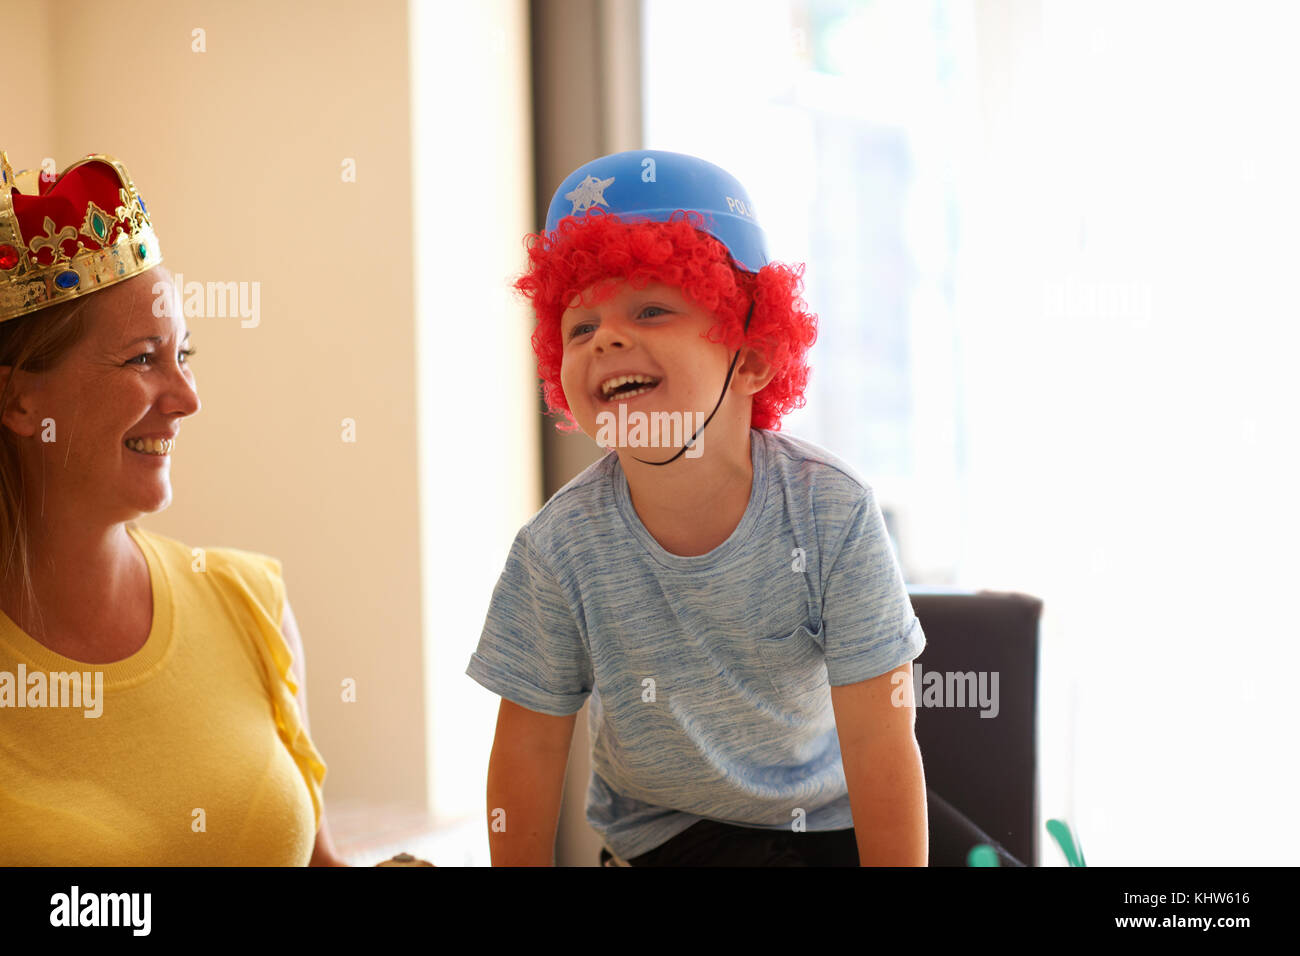 Cappelli divertenti immagini e fotografie stock ad alta risoluzione - Alamy